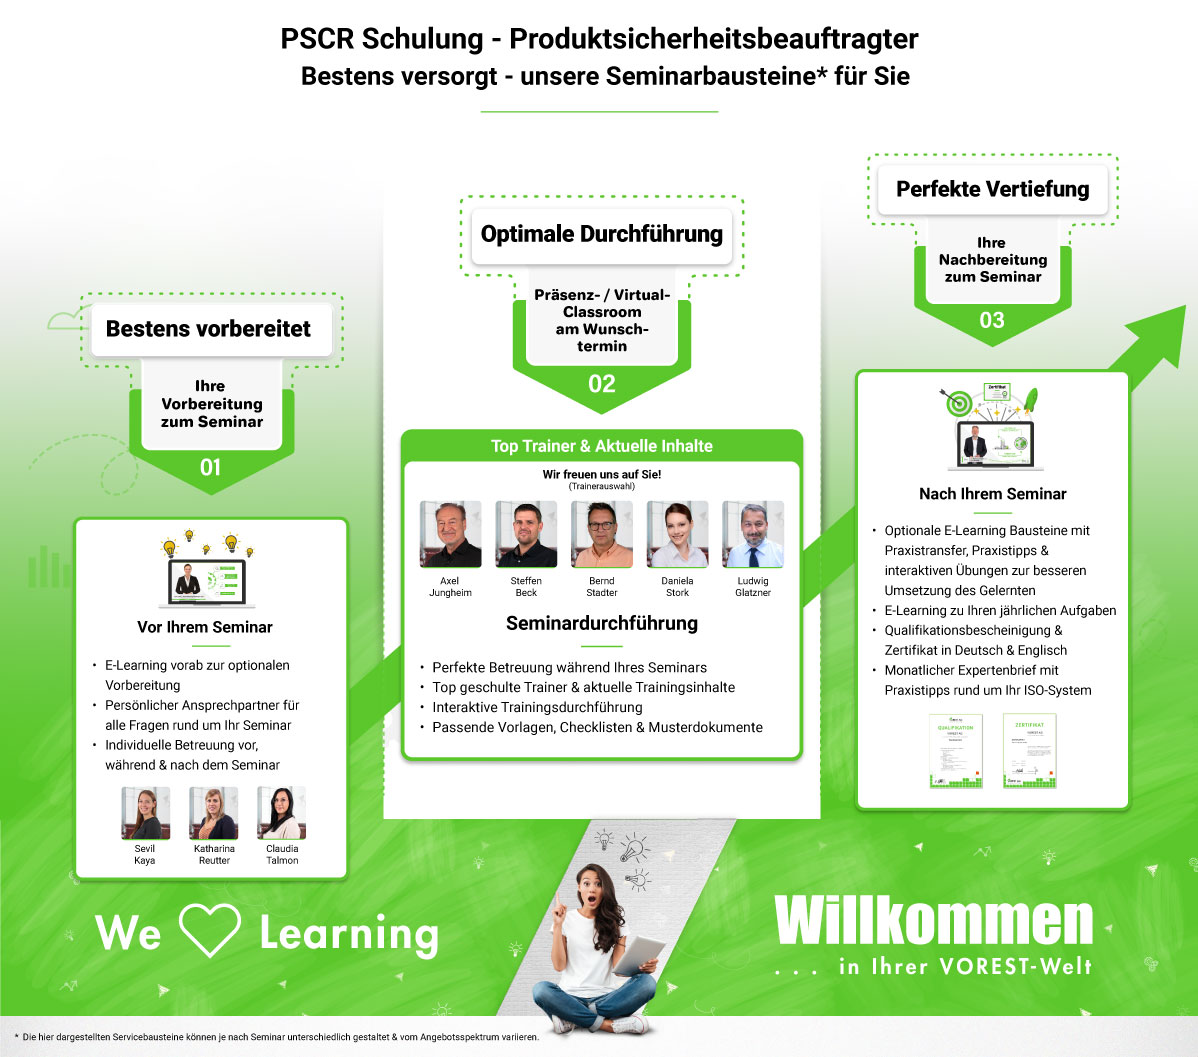 PSCR Schulung - Produktsicherheitsbeauftragter